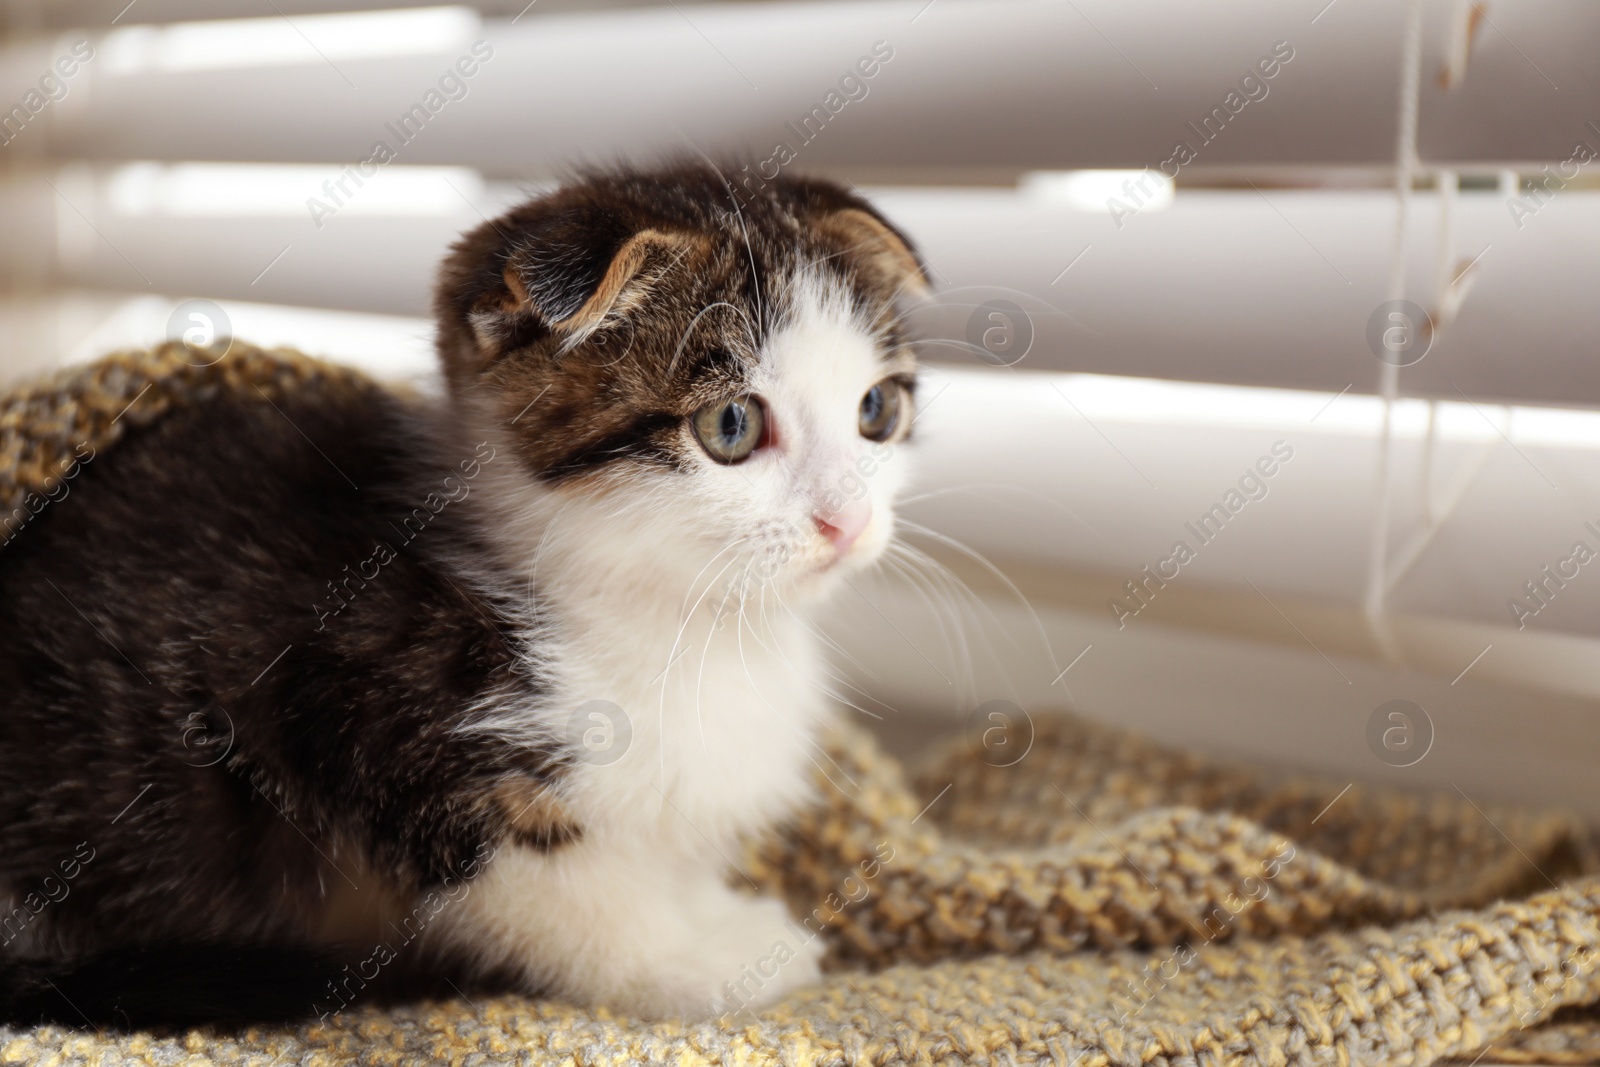 Photo of Adorable little kitten on blanket near window indoors, closeup